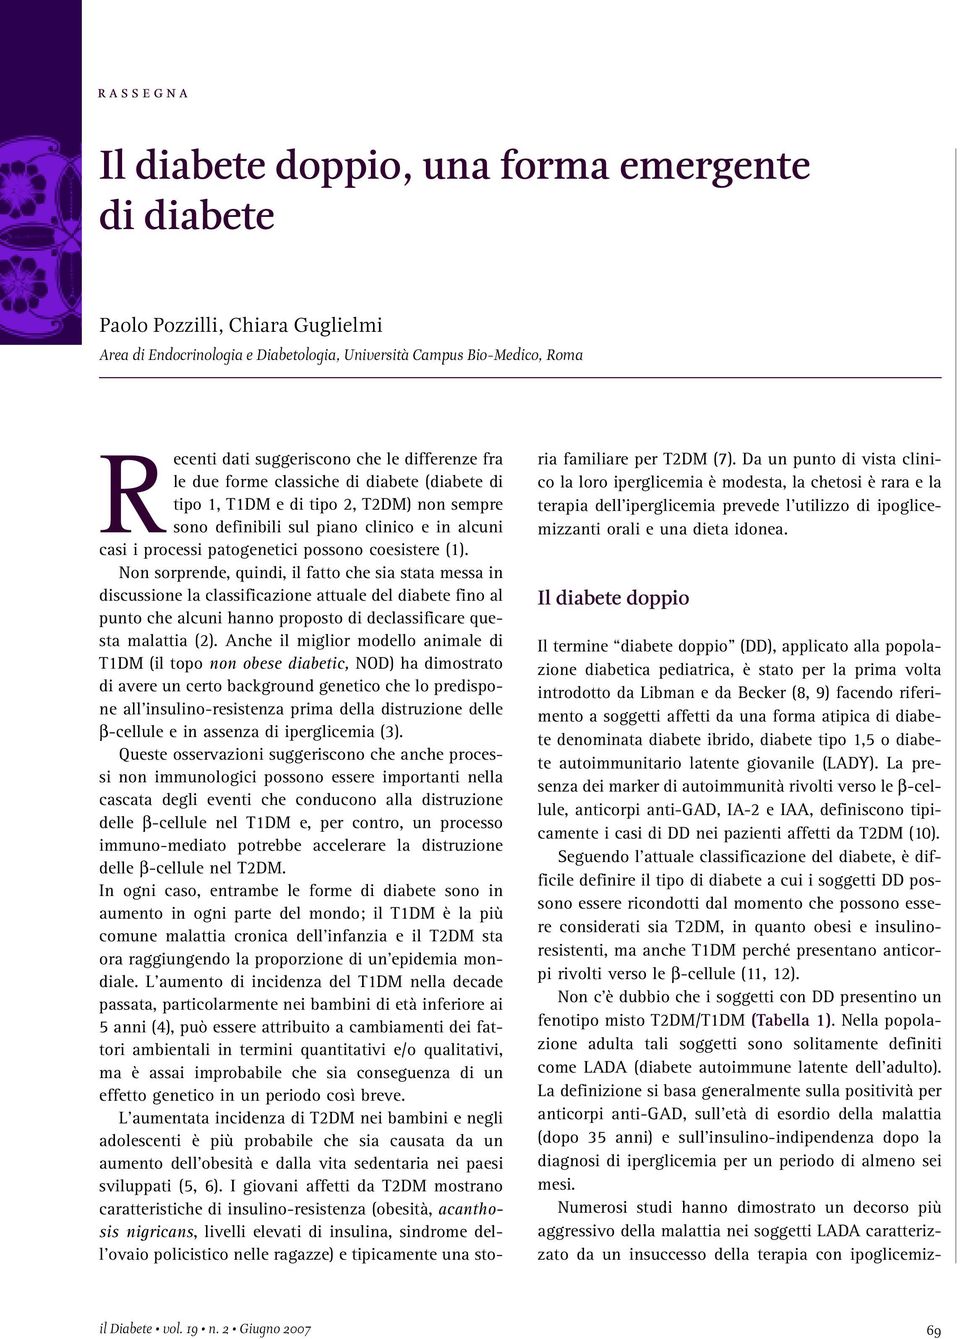 (1). Non sorprende, quindi, il fatto che sia stata messa in discussione la classificazione attuale del diabete fino al punto che alcuni hanno proposto di declassificare questa malattia (2).